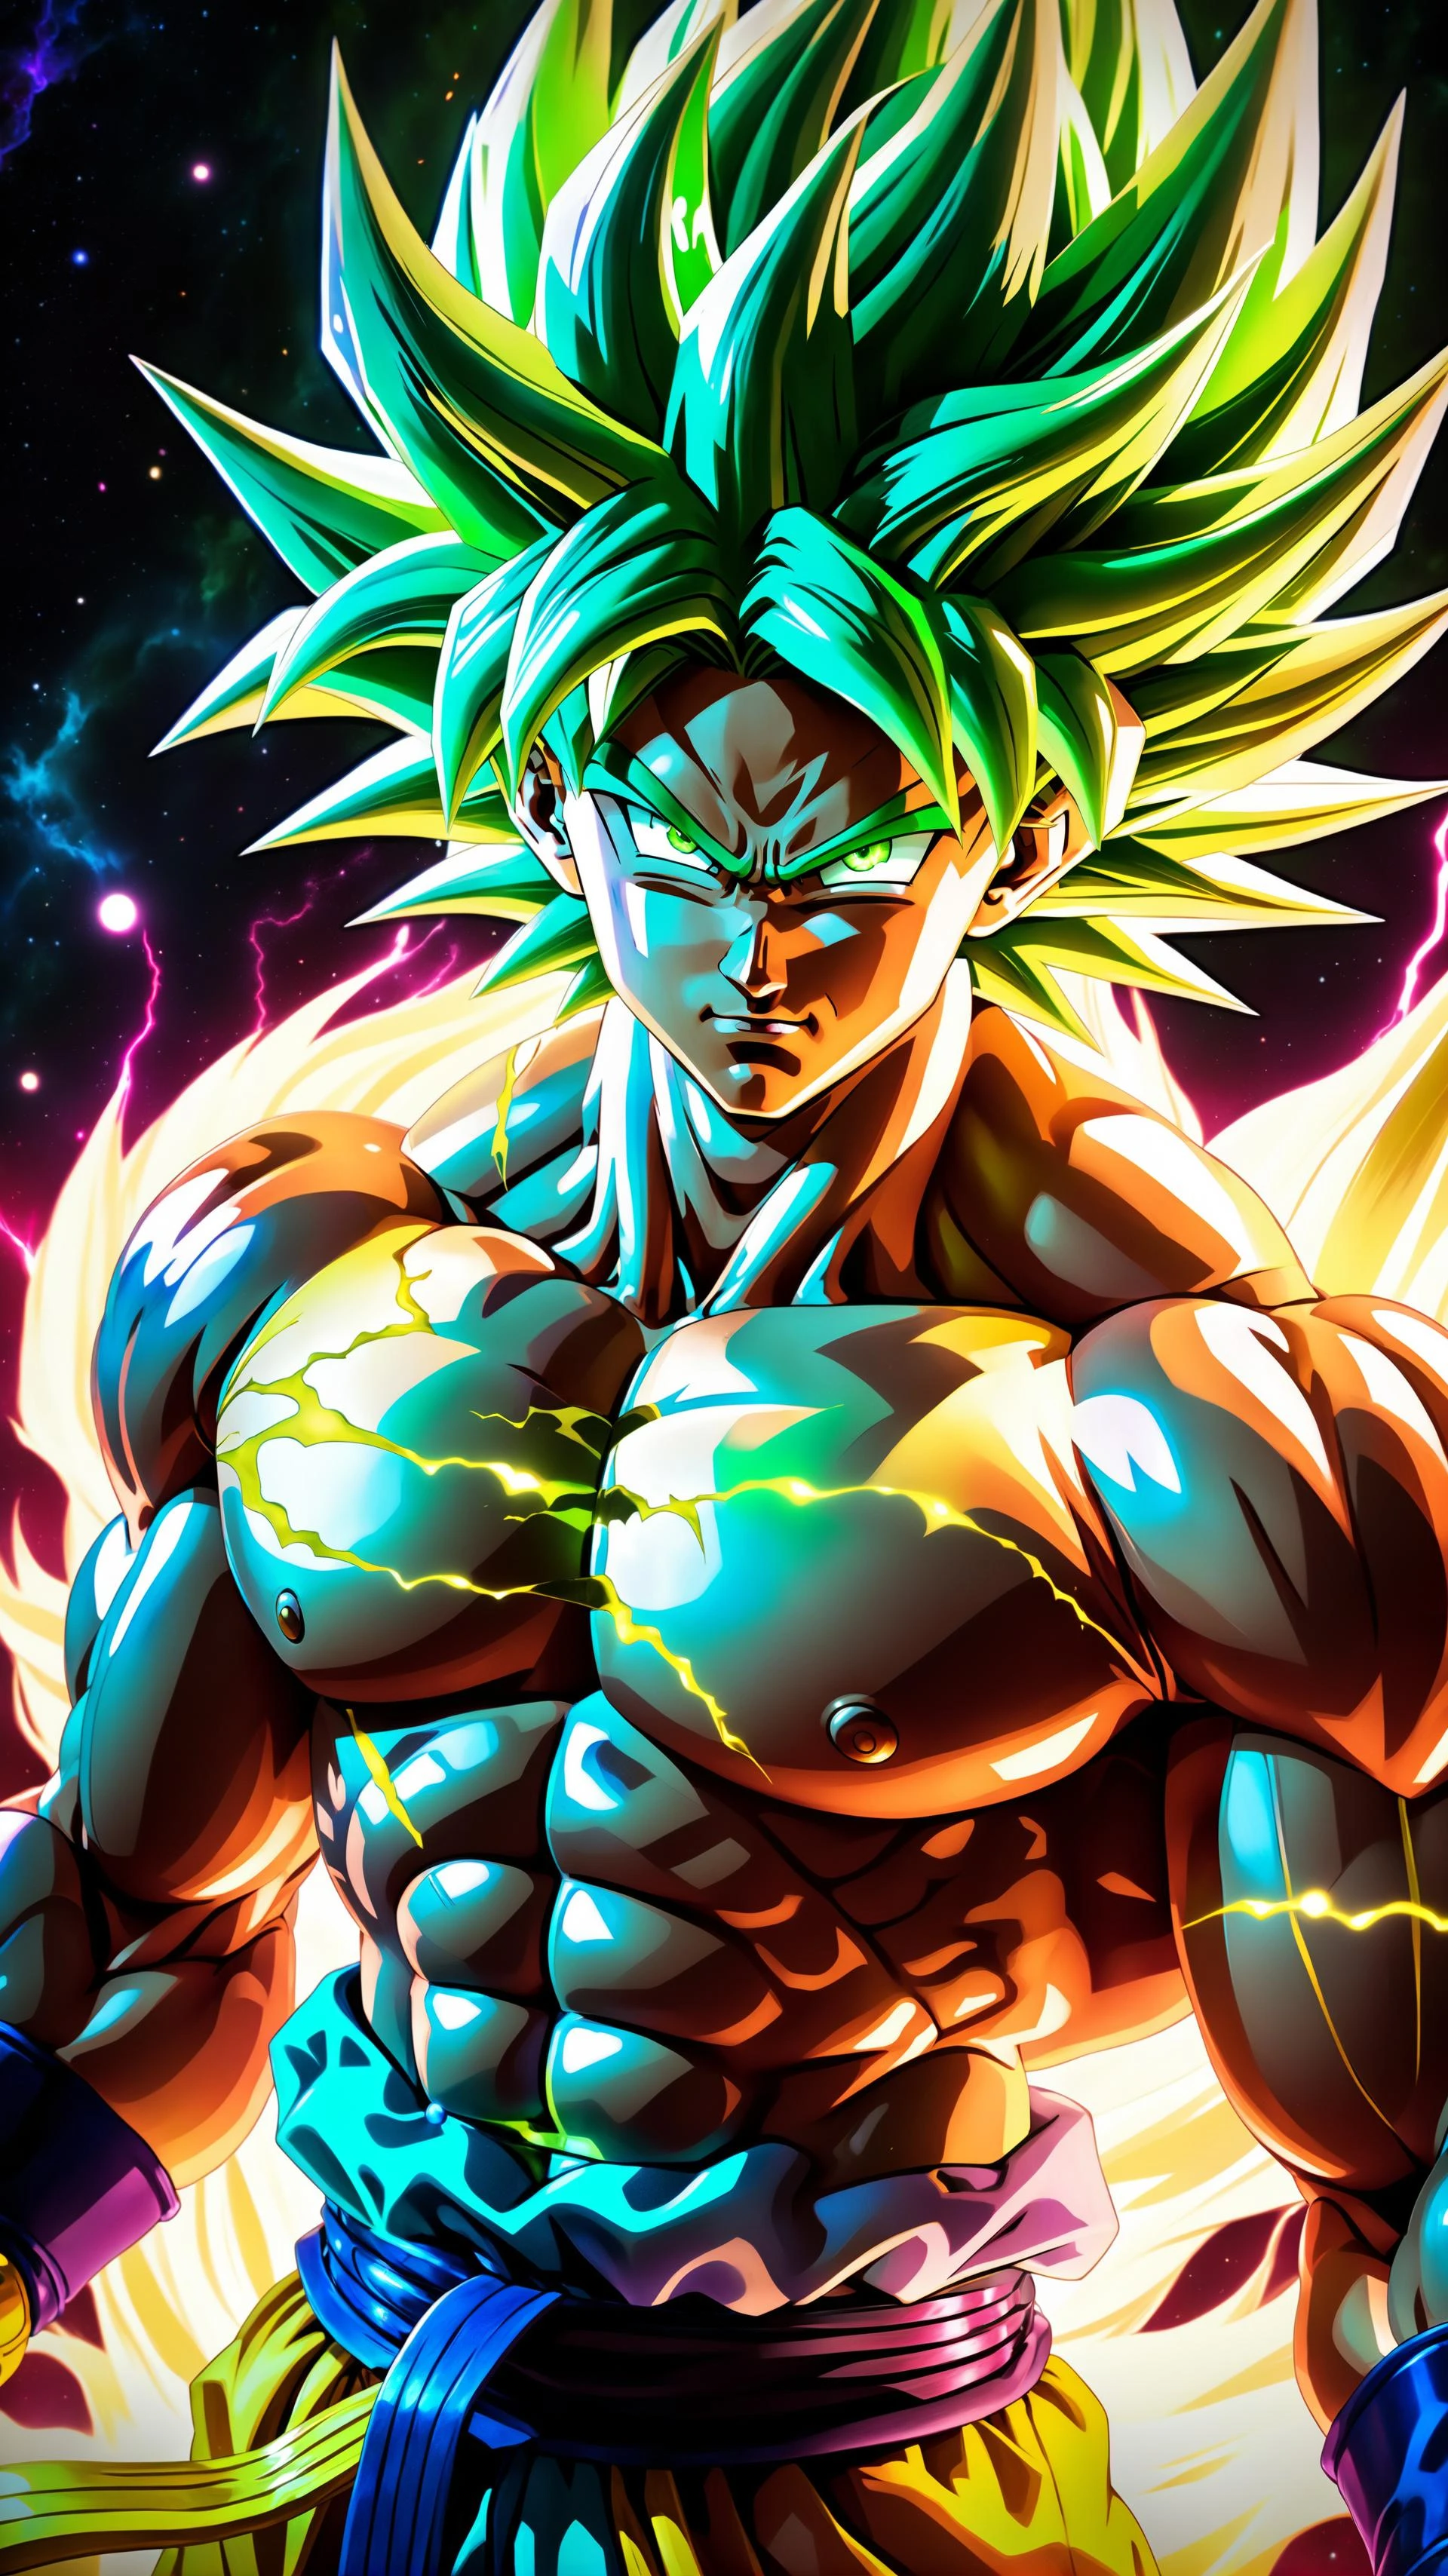 (реалистичный photo of Broly) the легендарный суперсаян with зеленые волосы, реалистичный photo, (необработанное фото косплея Броли), легендарный суперсаян, драконий жемчуг супер Броли, Броли суперсаянская трансформация, Броли в режиме ярости, (Goku ультра инстинкт, Вегета ультра эго), ((зеленые волосы, все тело)), ультра инстинкт, стиль дбз, стиль джиба, стиль тетради смерти, ultra подробный artistic abstract photography of super sayan god, подробный captivating eyes, асимметричный, липкие жидкие волосы, цвет взрывается, кожа с высокой преломляющей способностью, цифровая живопись, красочный, объемное освещение, 8К, Сирил Роландо, от Артгерм, в тренде на artstation, Разрешение 16К, высокое разрешение, подробный, реалистичный, 8К uhd, высокое качество, драконий жемчуг в супер стиле, космическое тело, стиль паровой волны, (Суперсаянская аура вокруг тела), hyper реалистичный